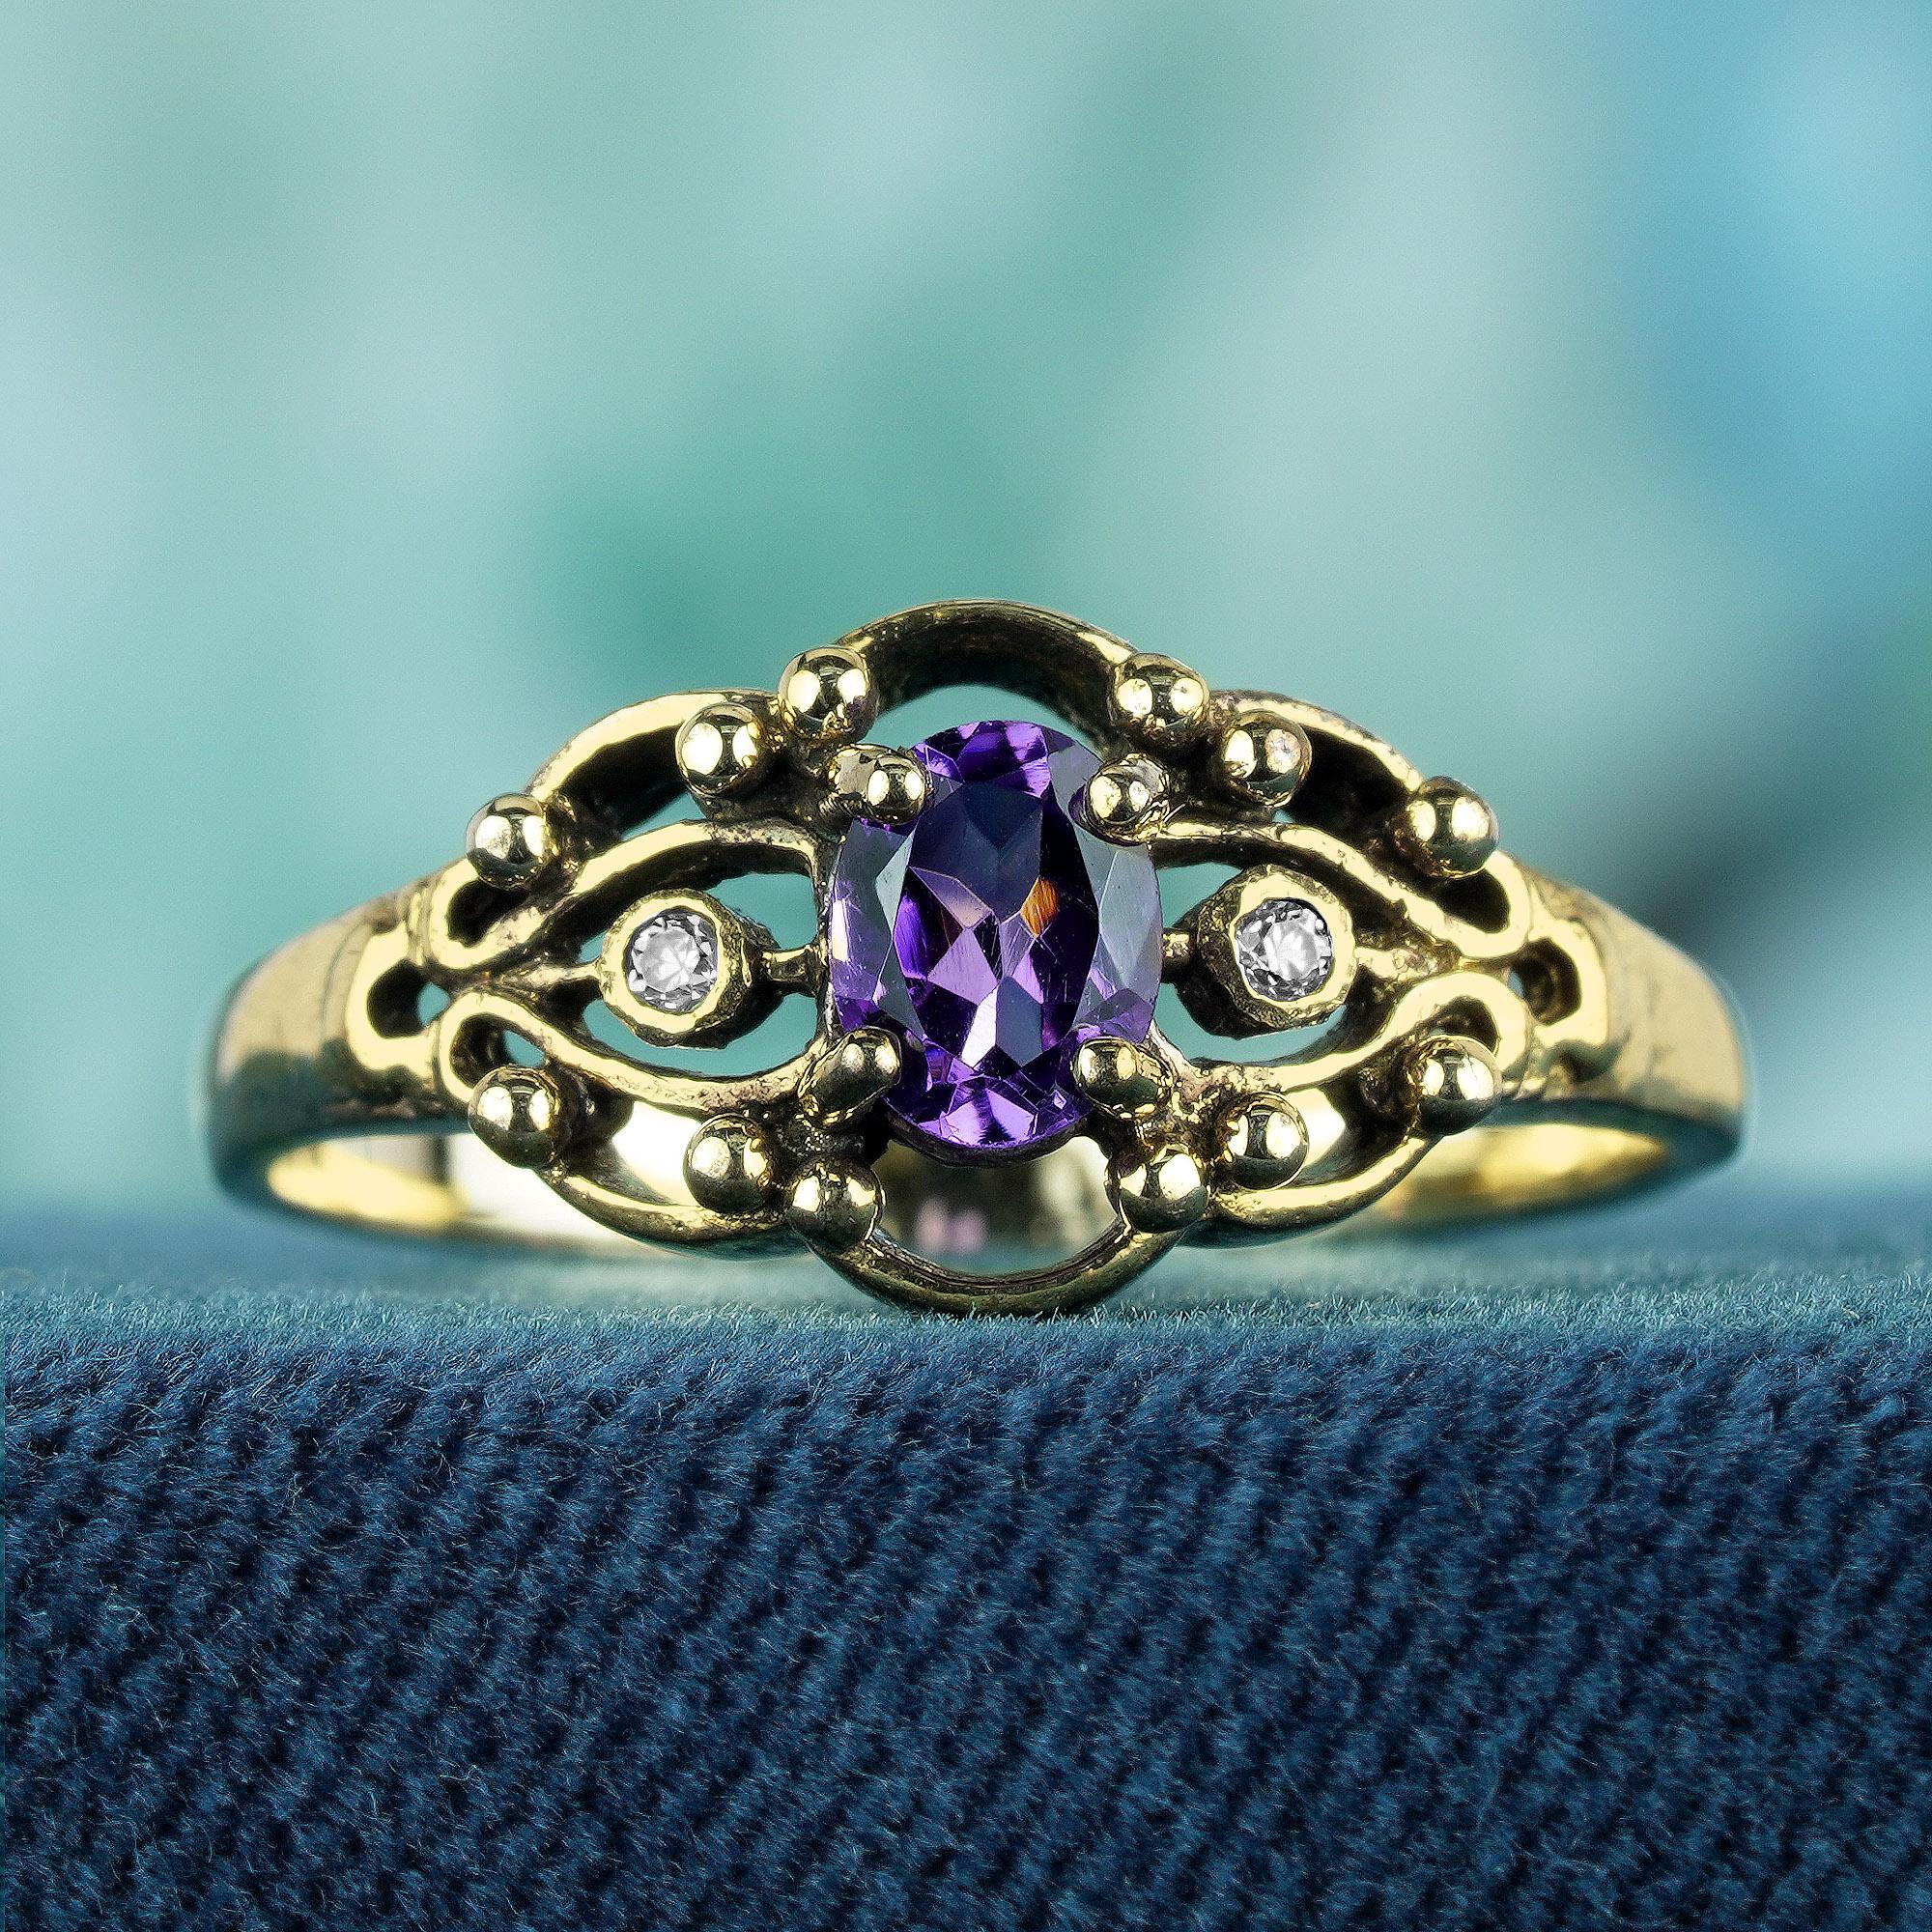 Der Ring ist aus Gelbgold gefertigt und weist ein Design im Vintage-Stil auf. Das Herzstück ist ein ovaler, facettierter Amethyst mit violettem Farbton in Zackenfassung. Zwei kleine runde Diamanten flankieren jede Seite, maximieren das Funkeln und